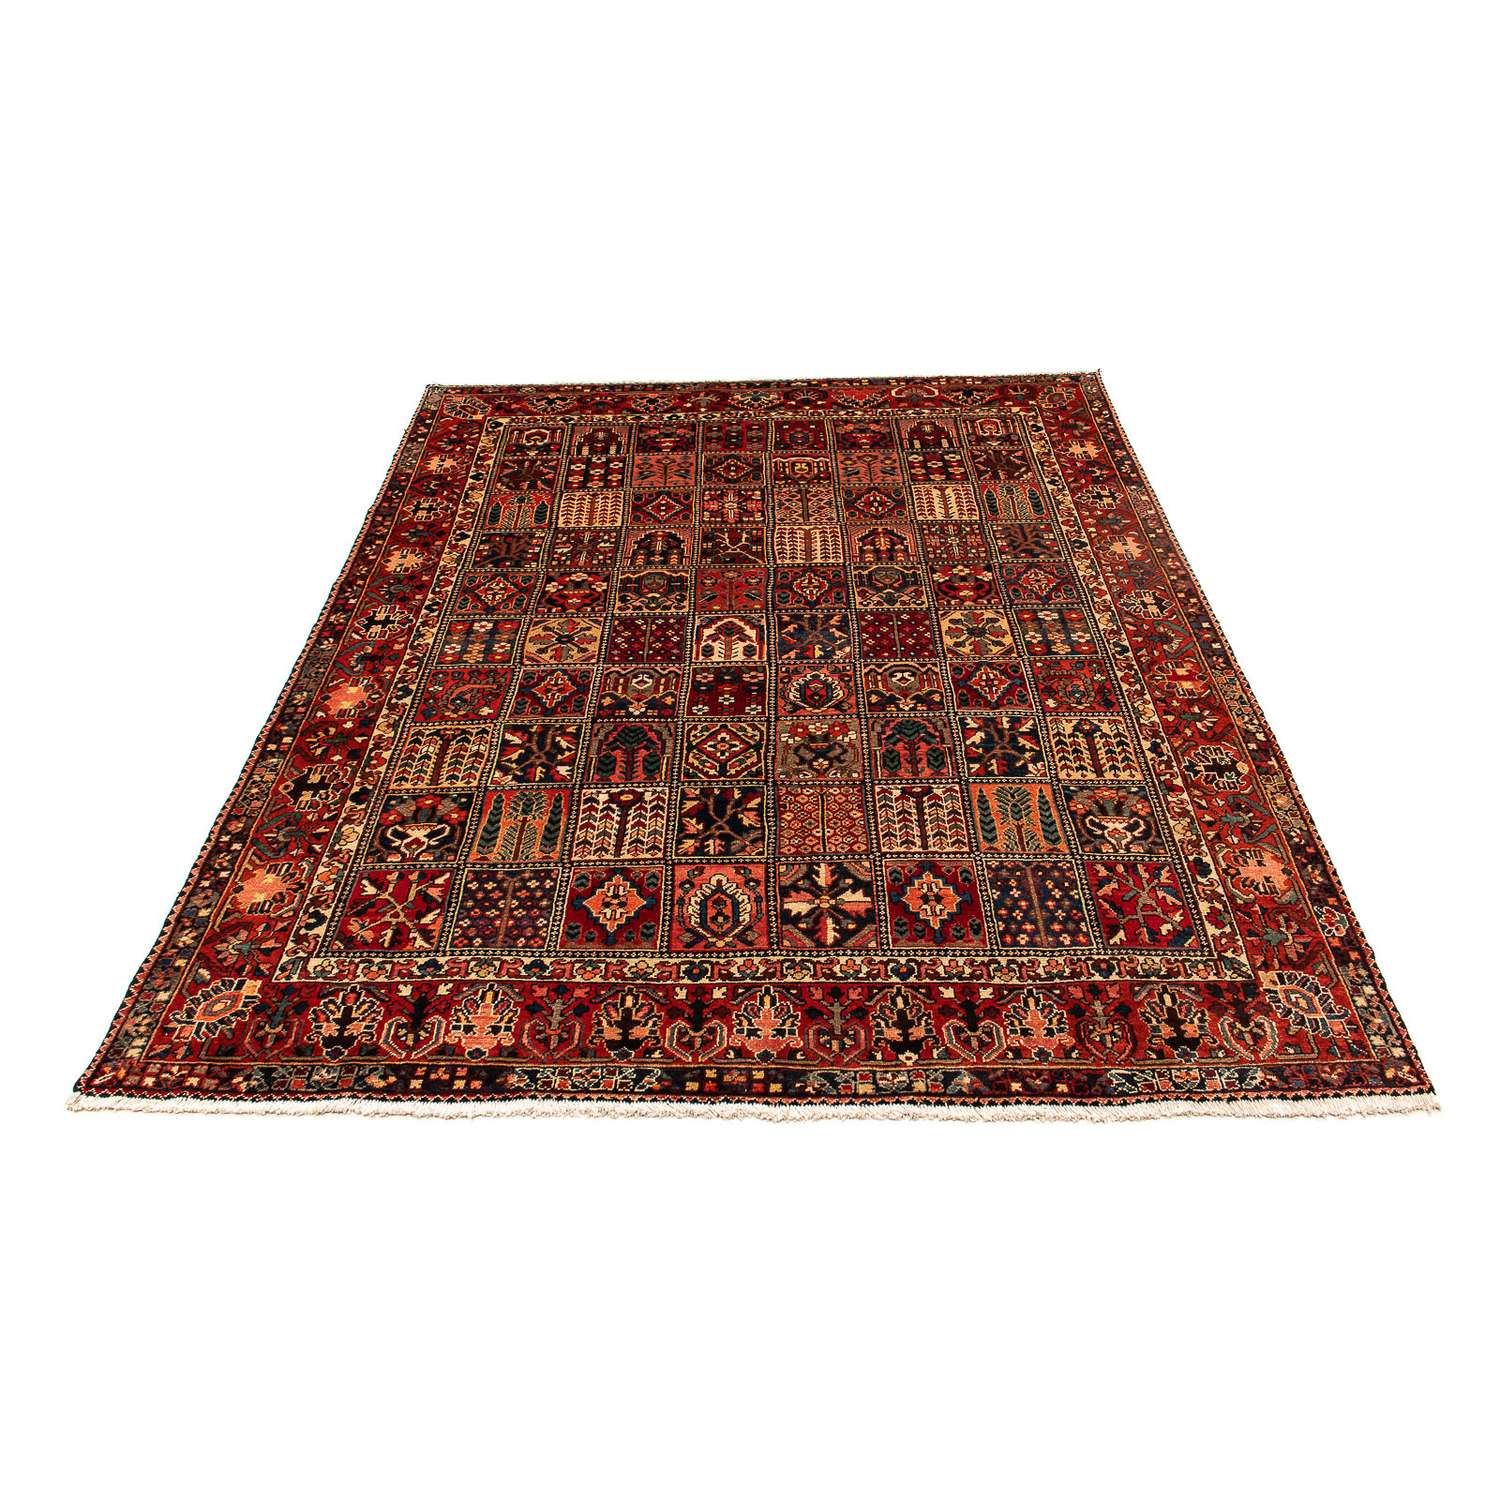 Tapis persan - Nomadic - 351 x 302 cm - rouge foncé